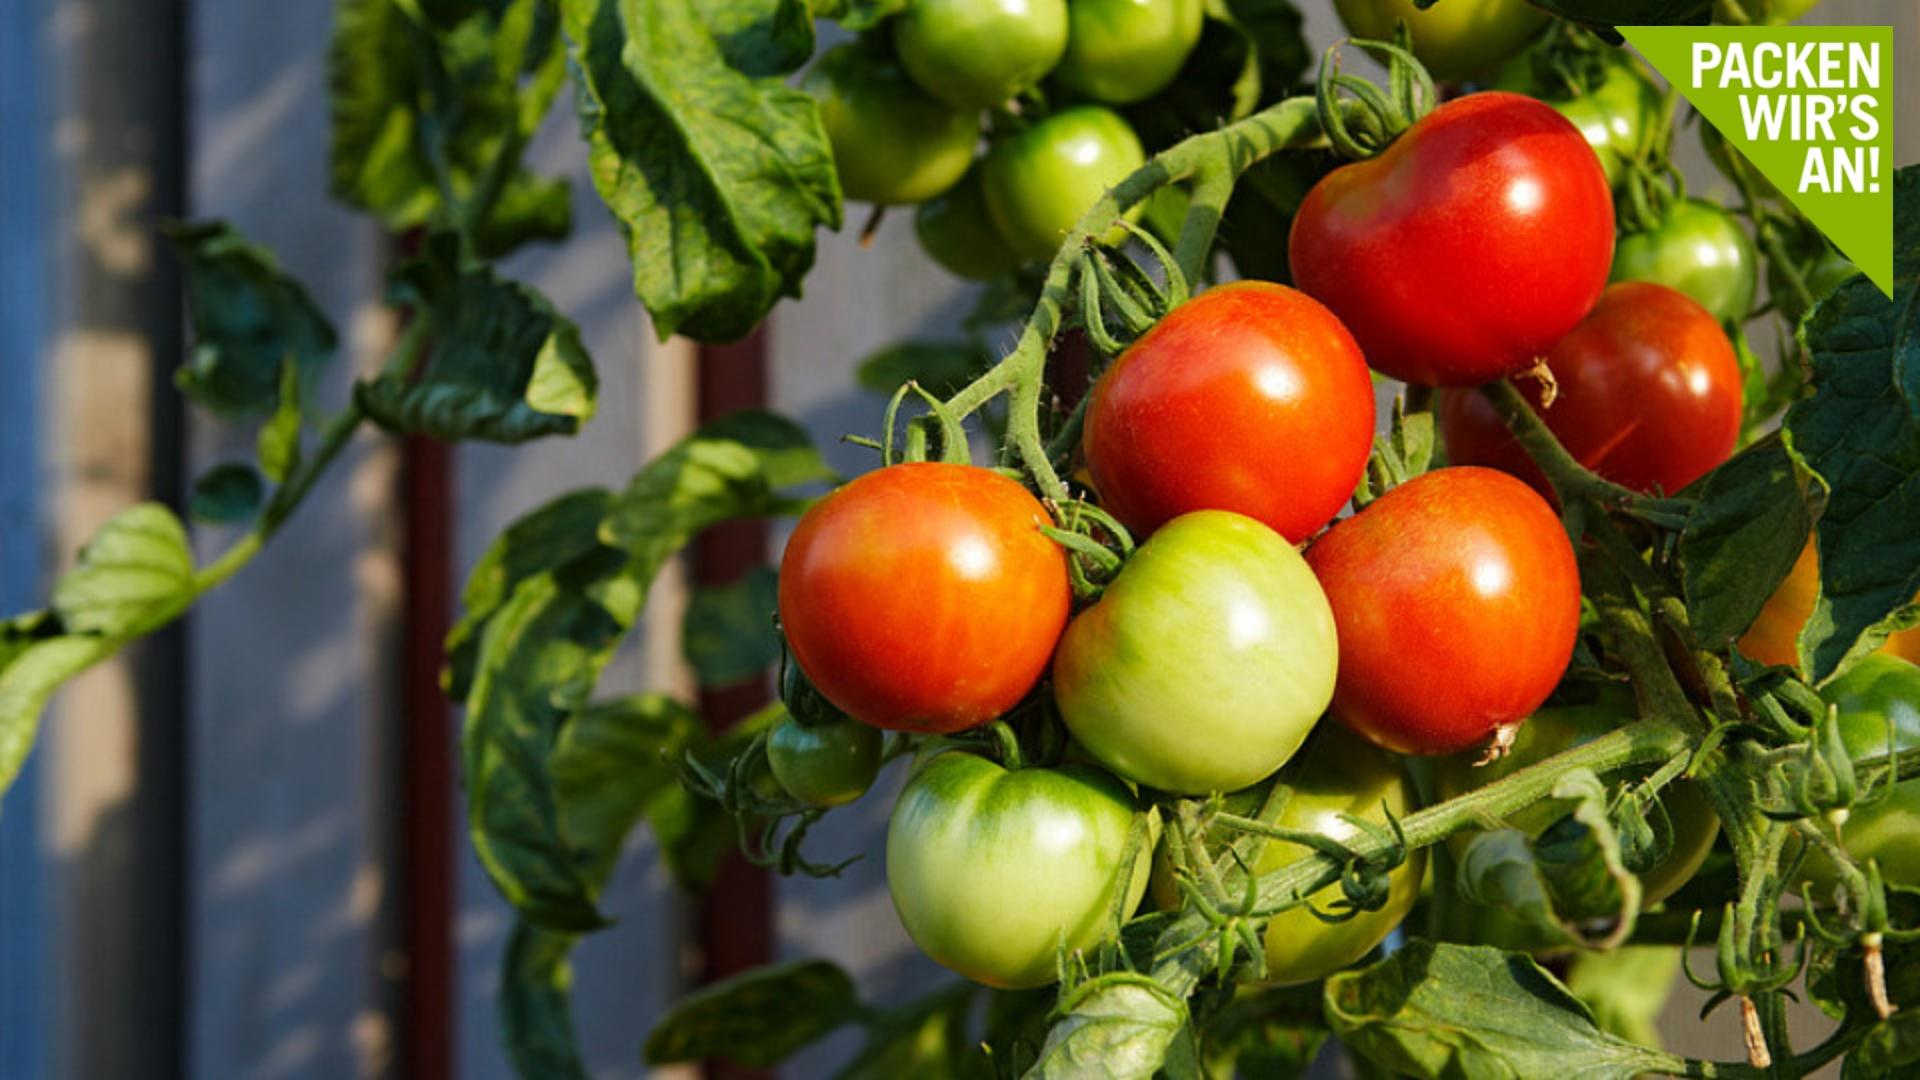 Gemüse und Obst auf dem Balkon anbauen - so geht's Gartenfeeling im Miniformat